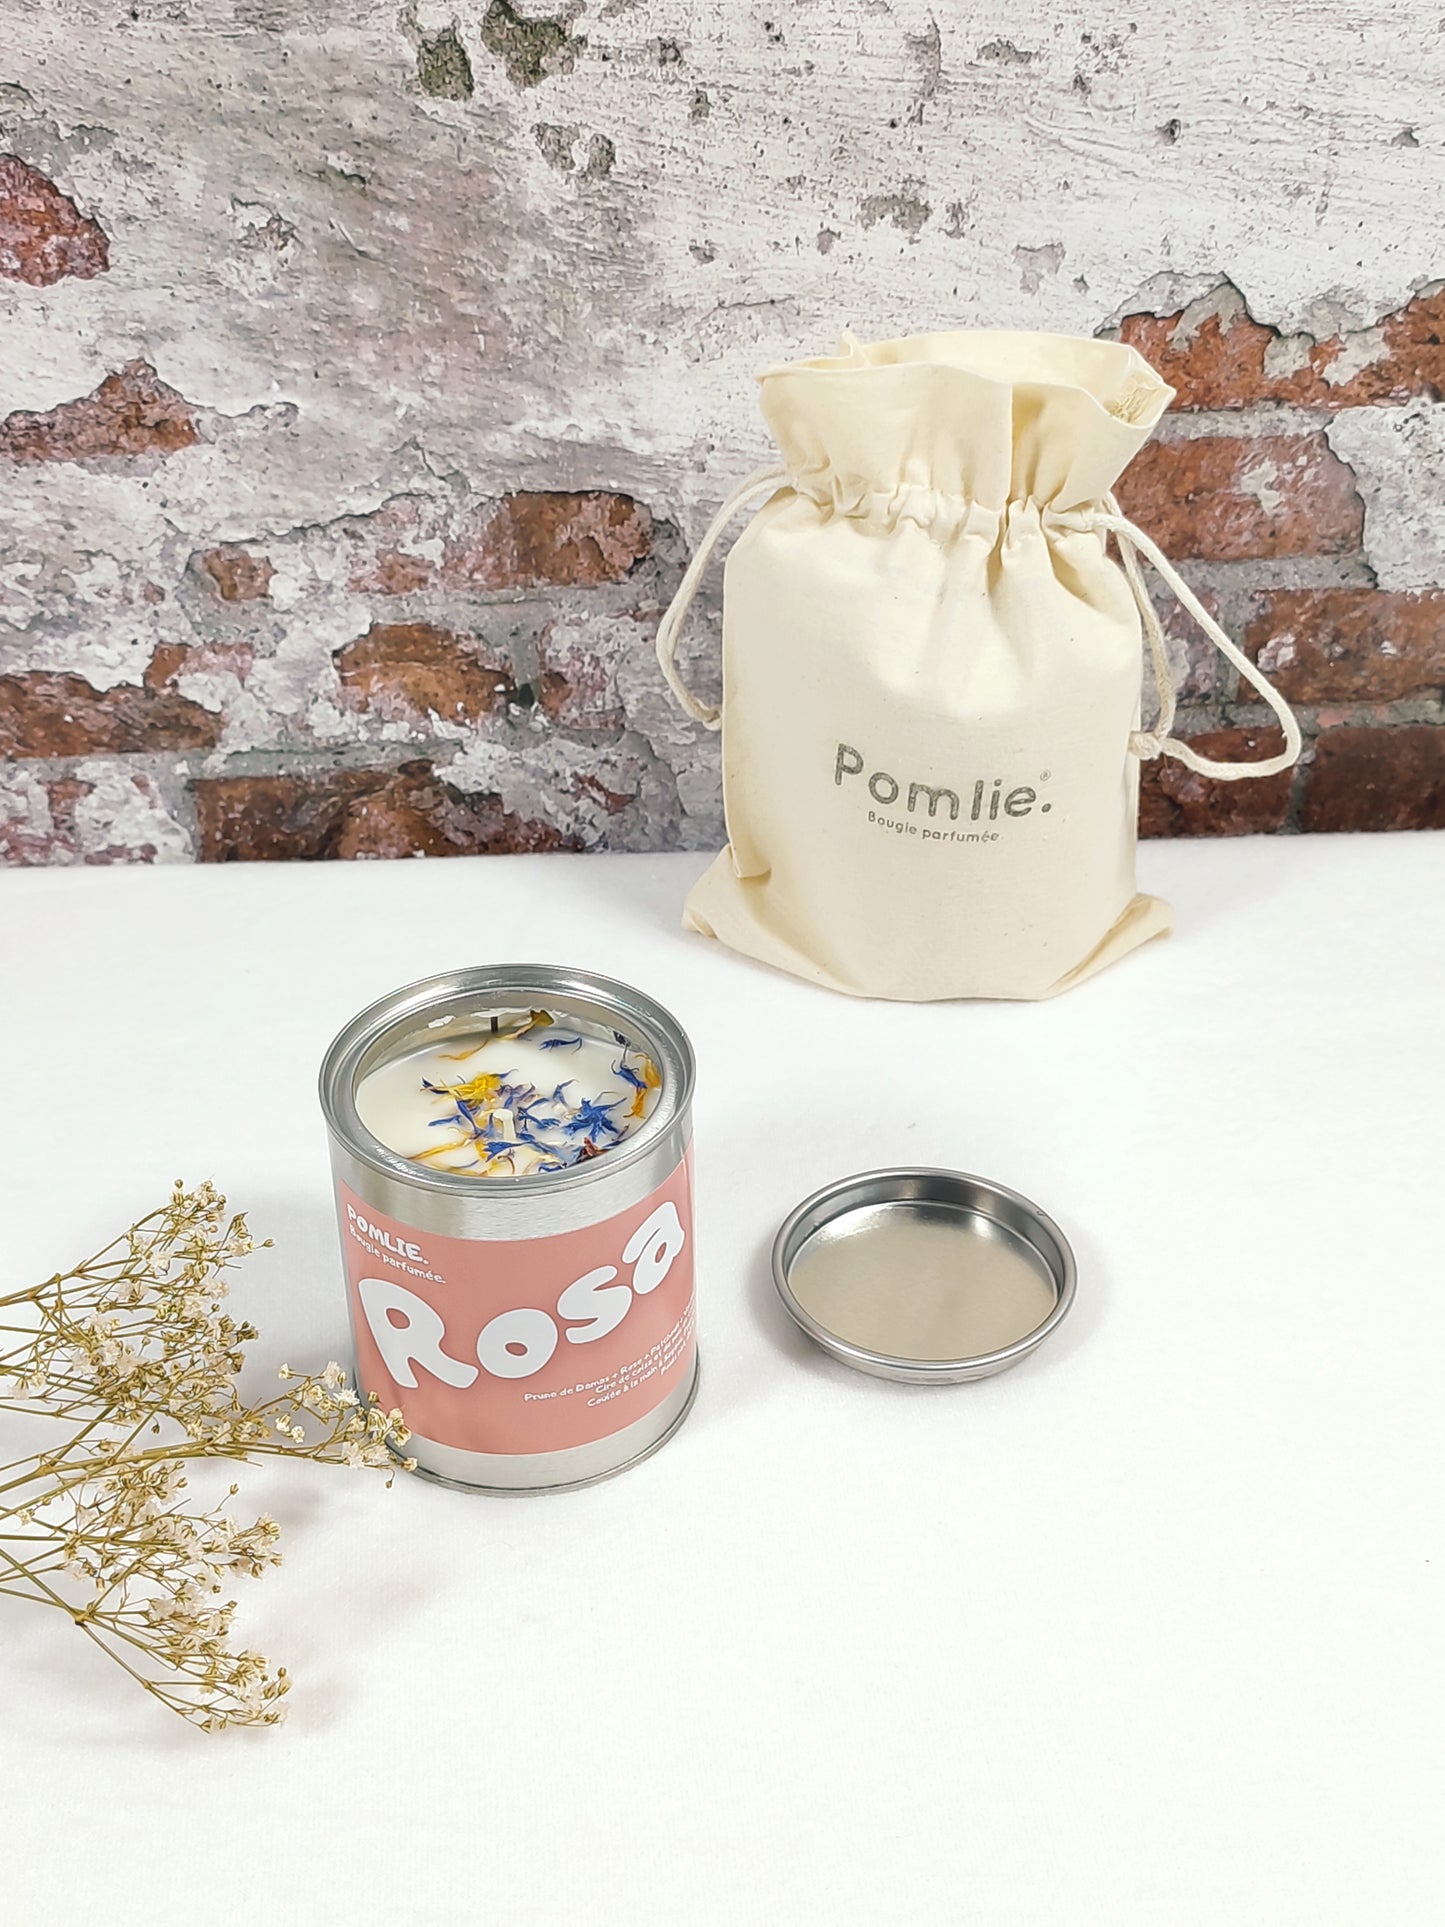 Bougie Pomlie Rosa dans une boîte en métal rose avec sac en coton.